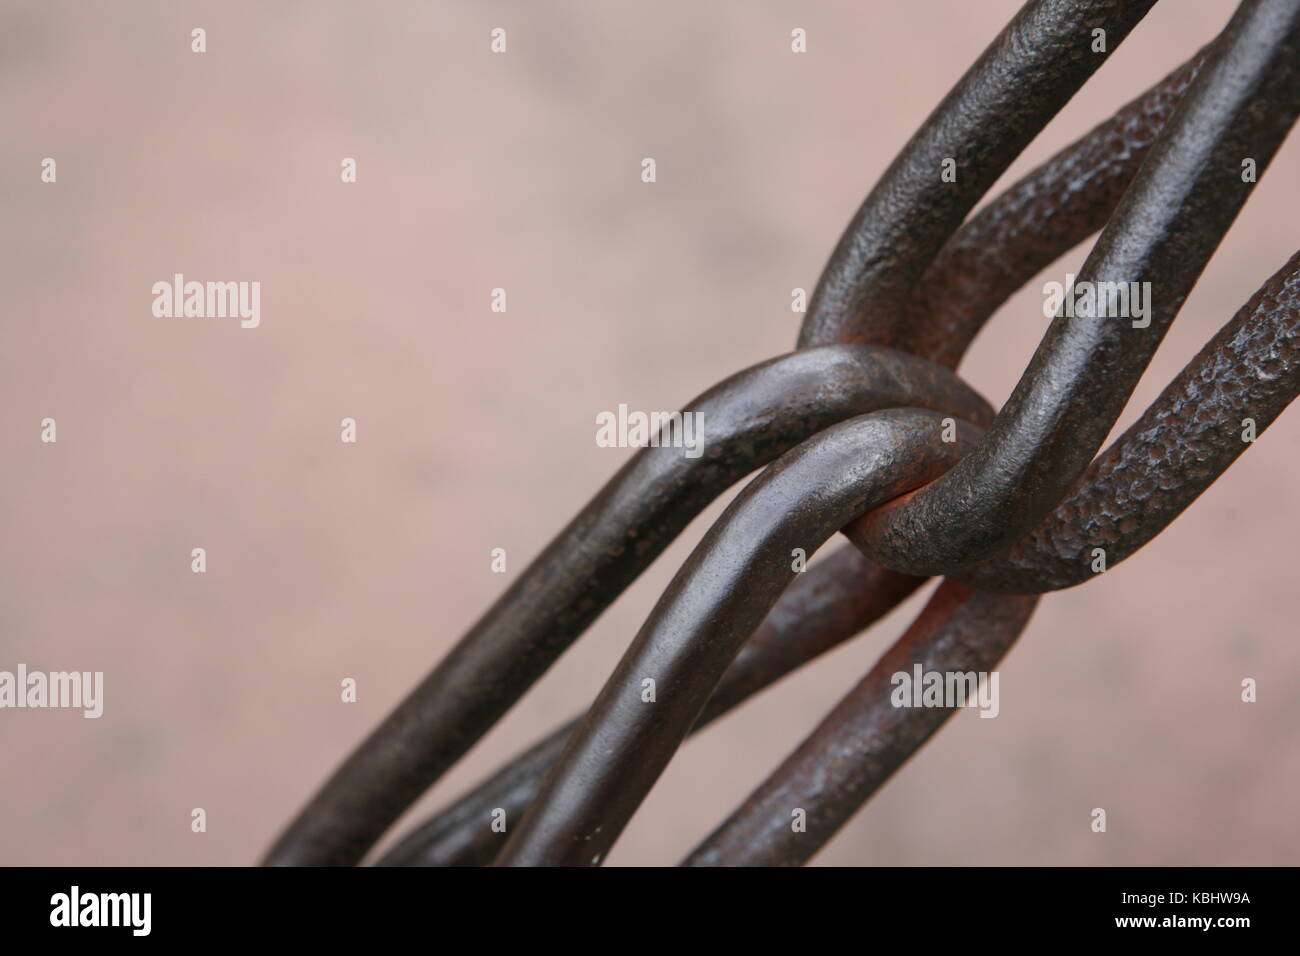 schwere stahl Kette zur Sicherung - heavy steel chain for security Stock Photo